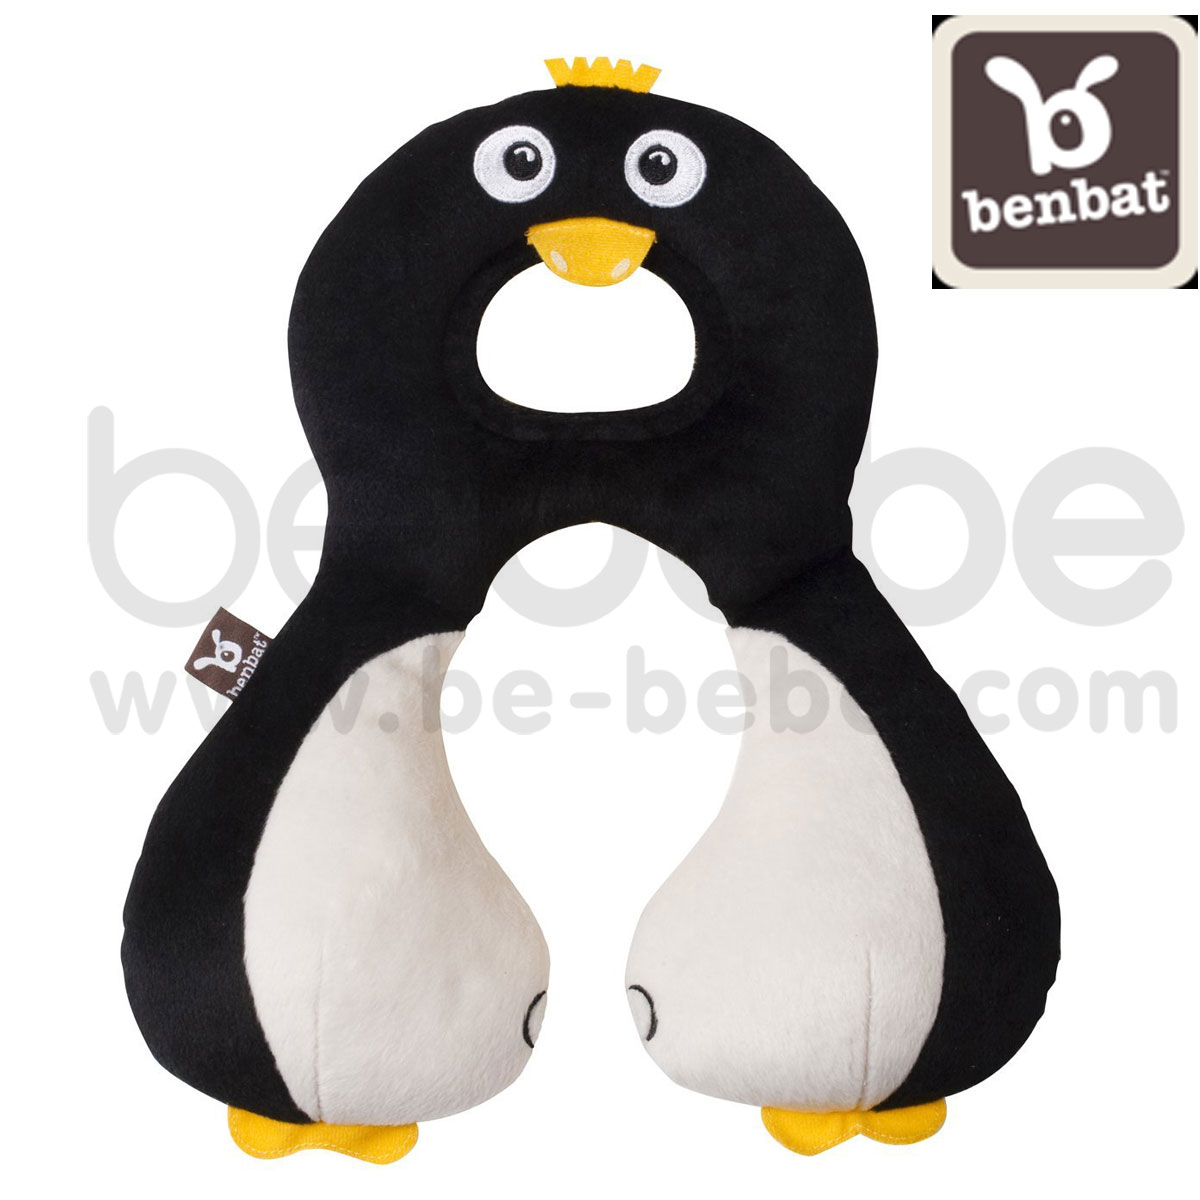 benbat : Head and Neck Support/Penguin (HR264)